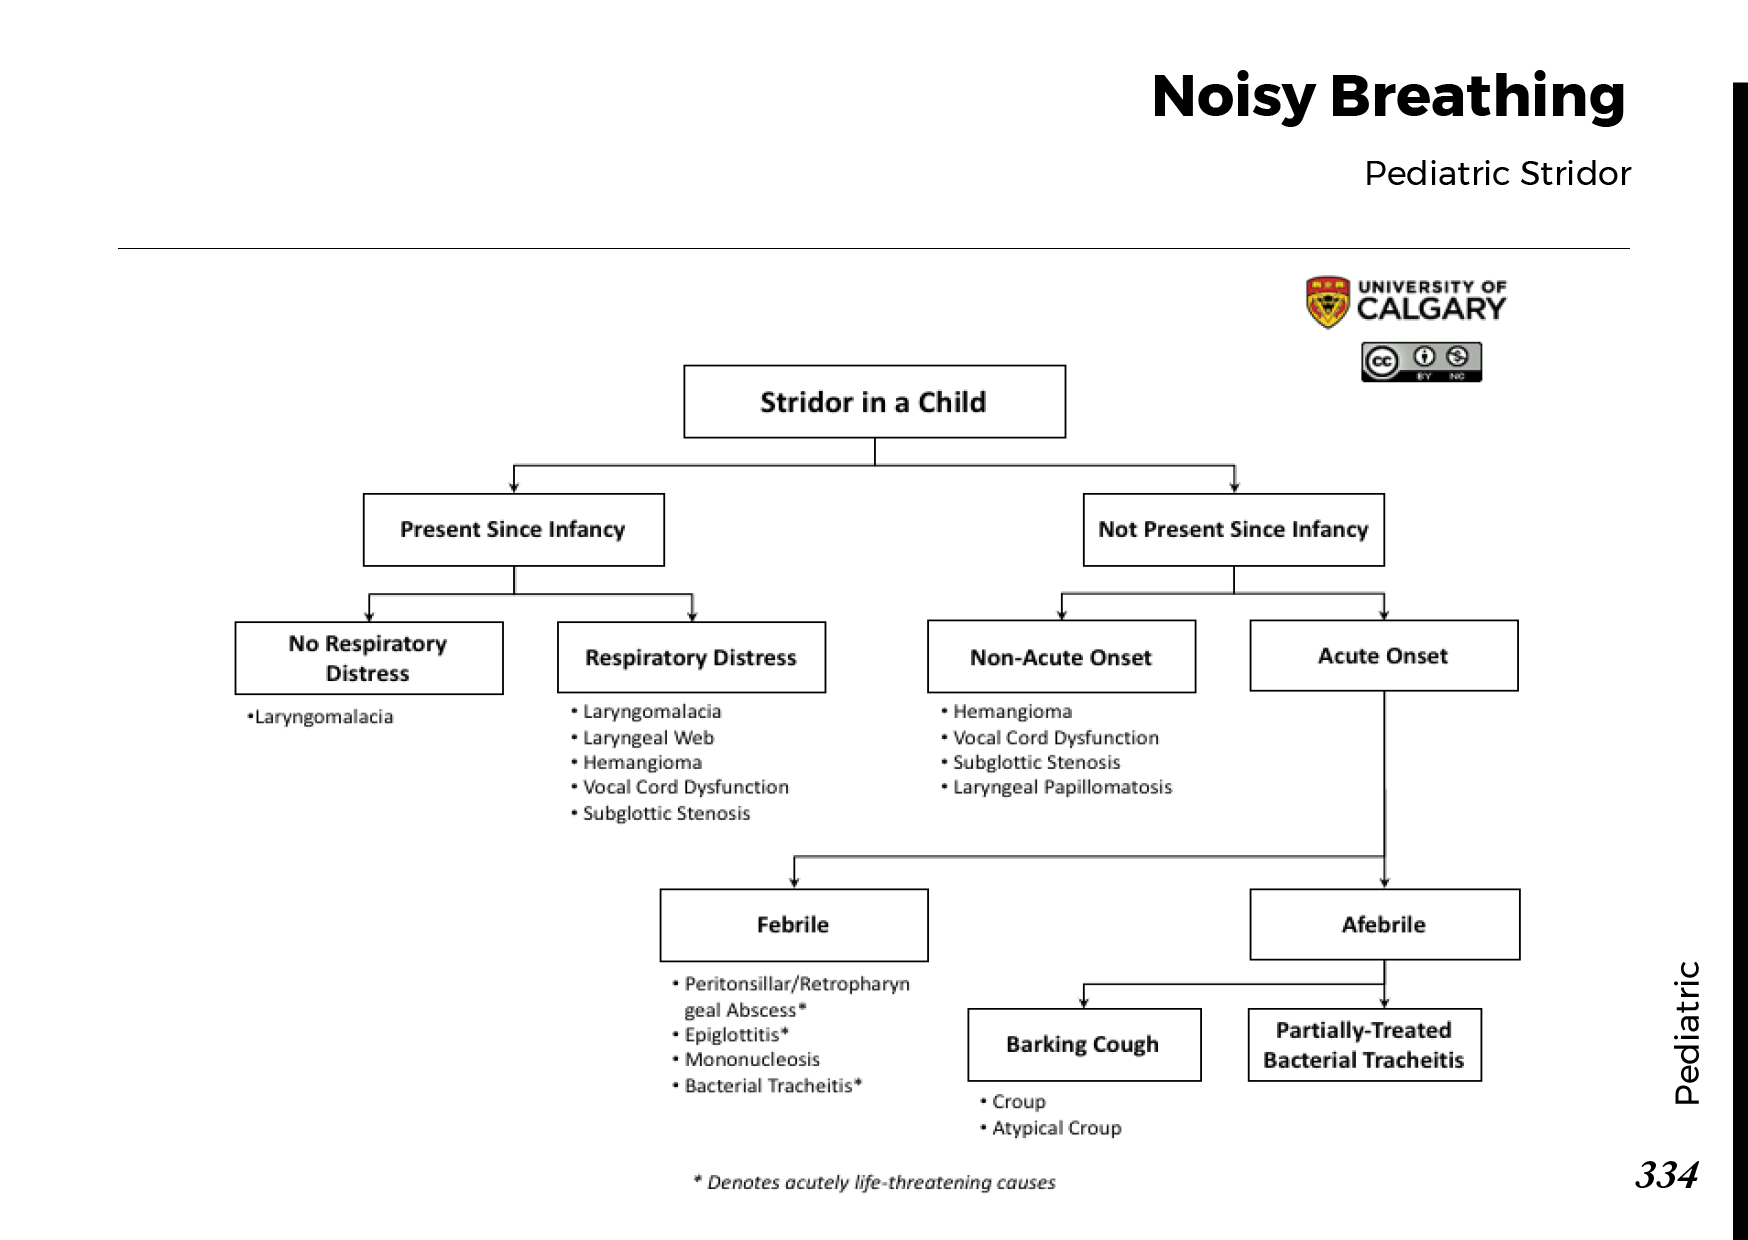 NOISY BREATHING: Pediatric Stridor Scheme